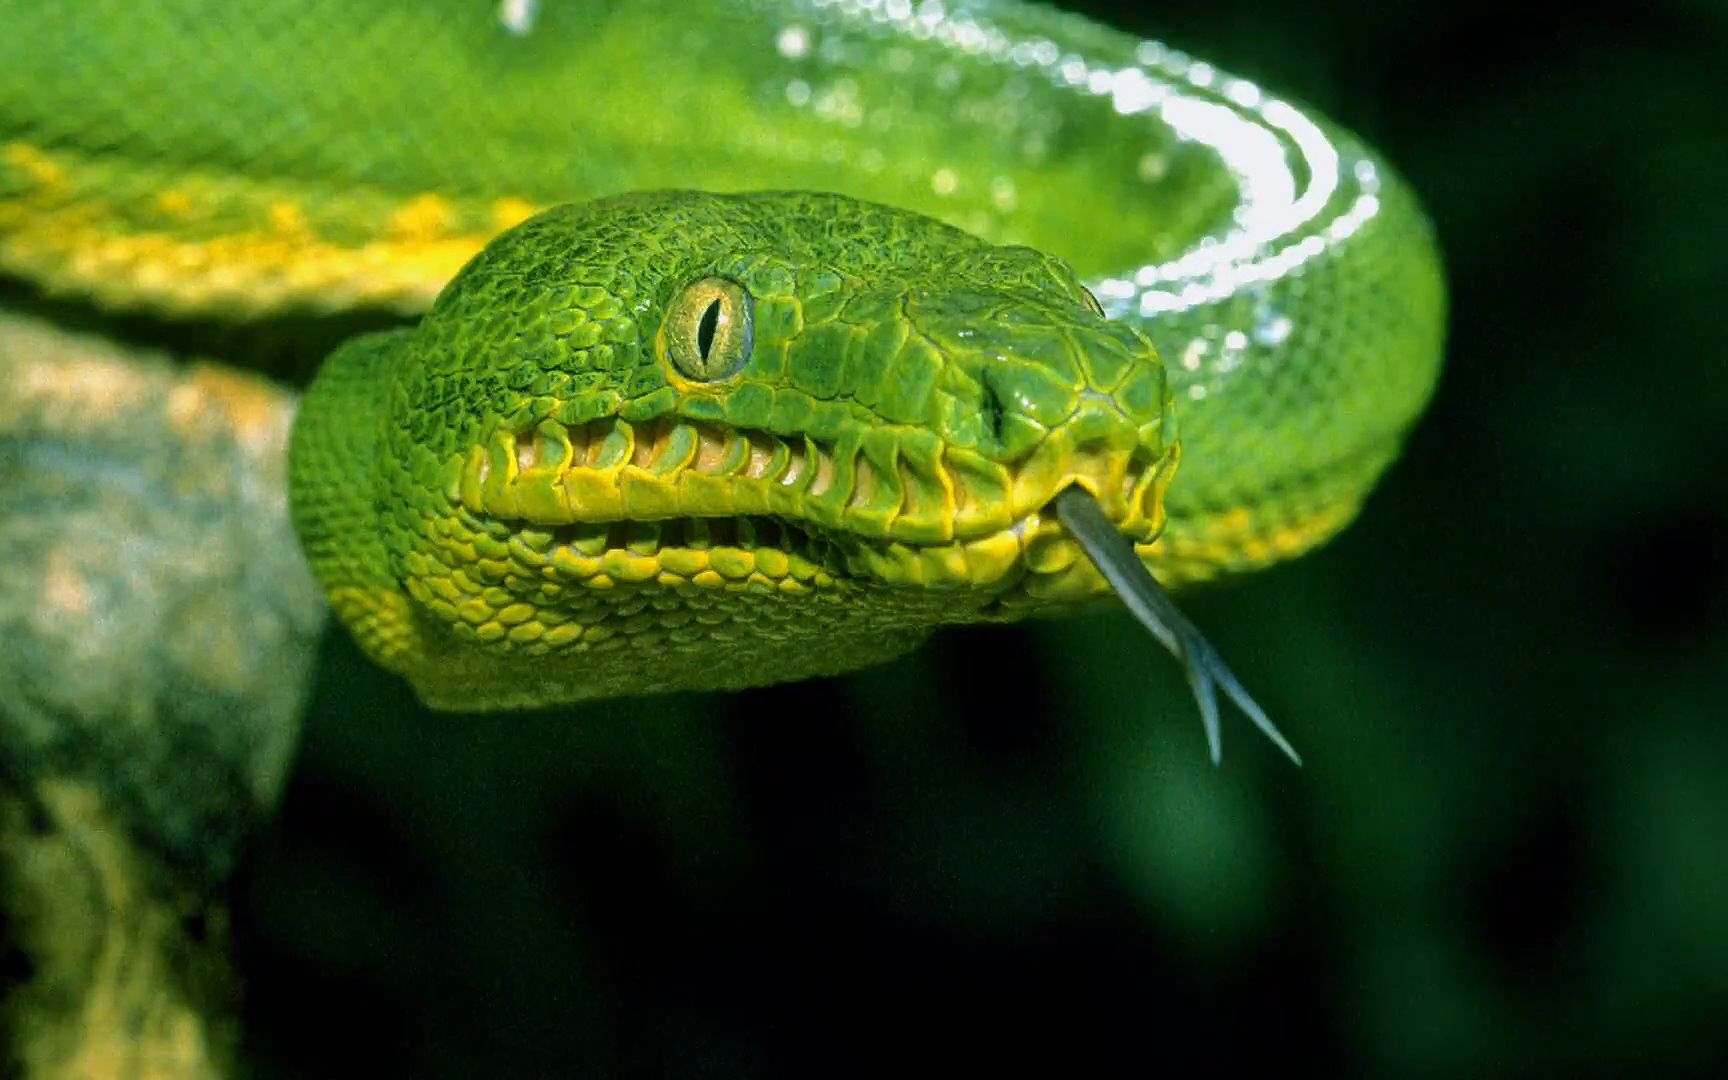 亚马逊流域最耀眼的蛇现真容!努力拍摄让翡翠树蚺一头雾水!